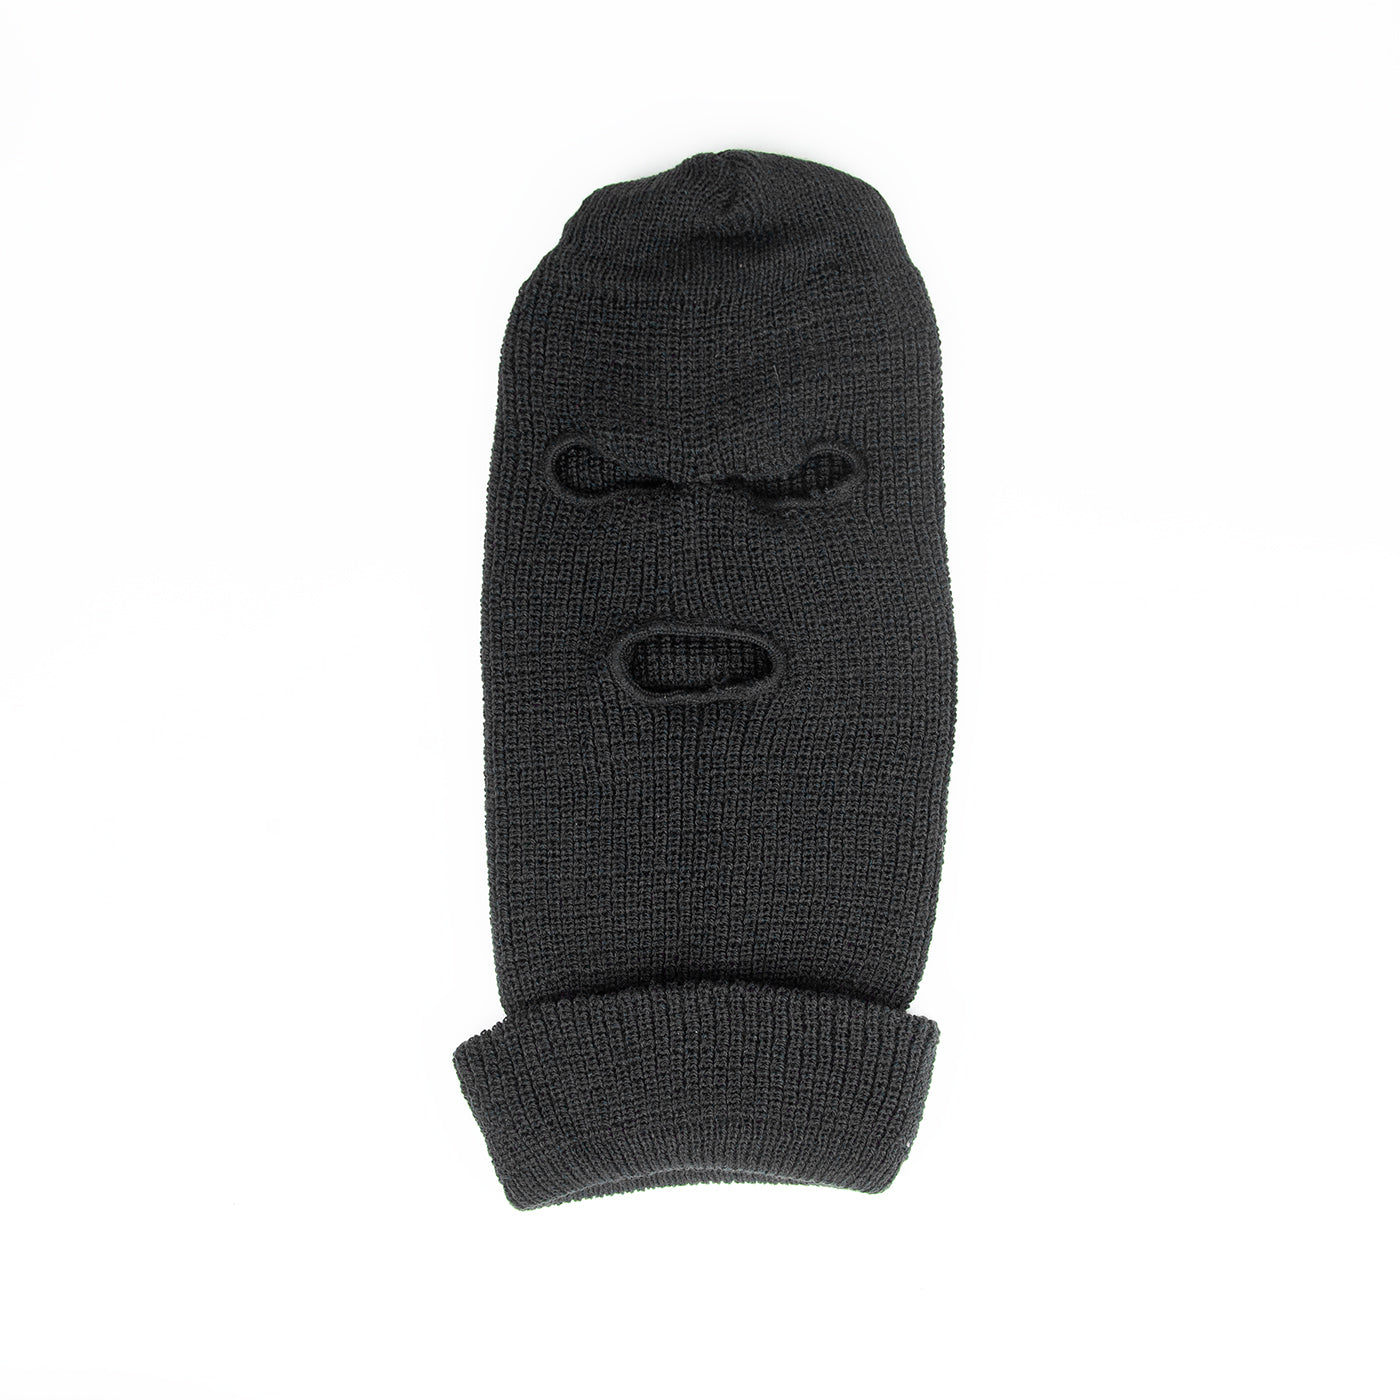 Knit Face Mask - Black